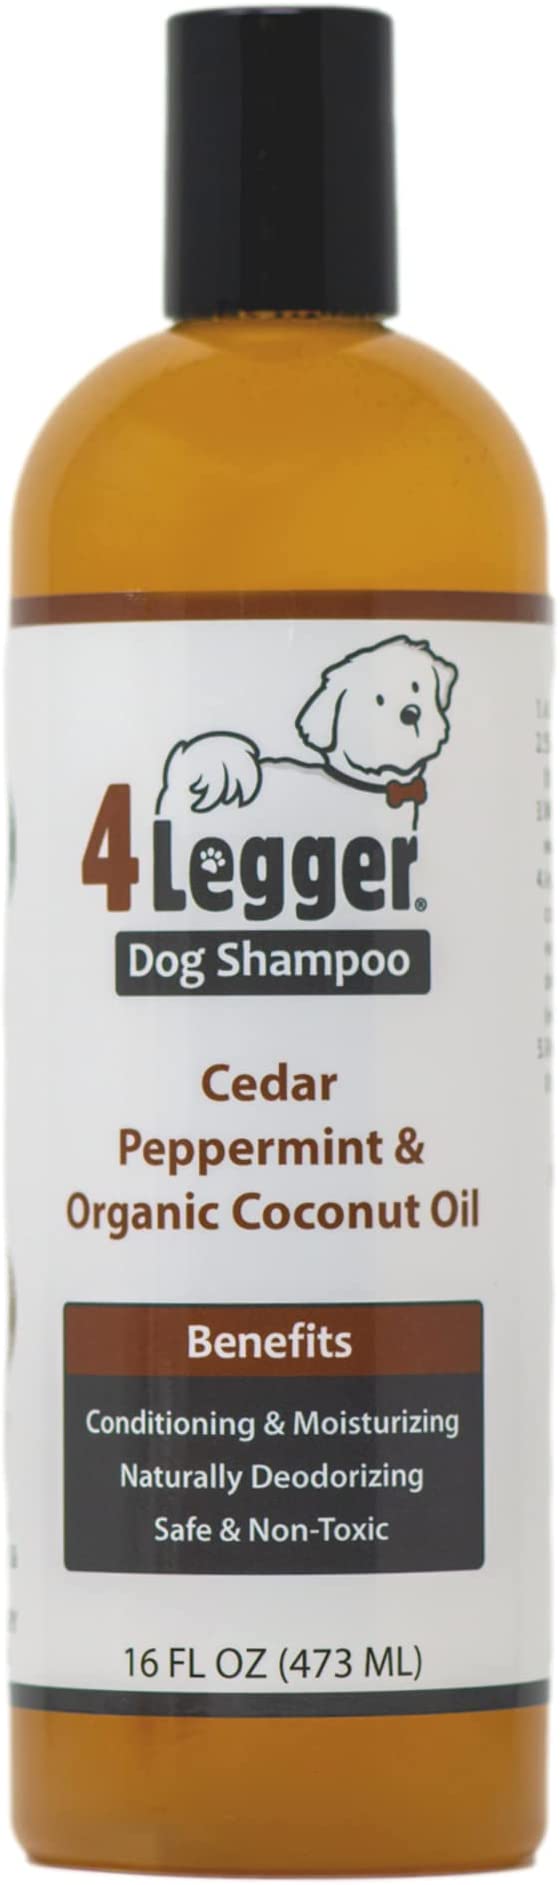 4Legger USDA Certified Organic Dog Shampoo and Conditioner - All Natural Dog Shampoo Eliminates Odor with Cedar Essential Oil